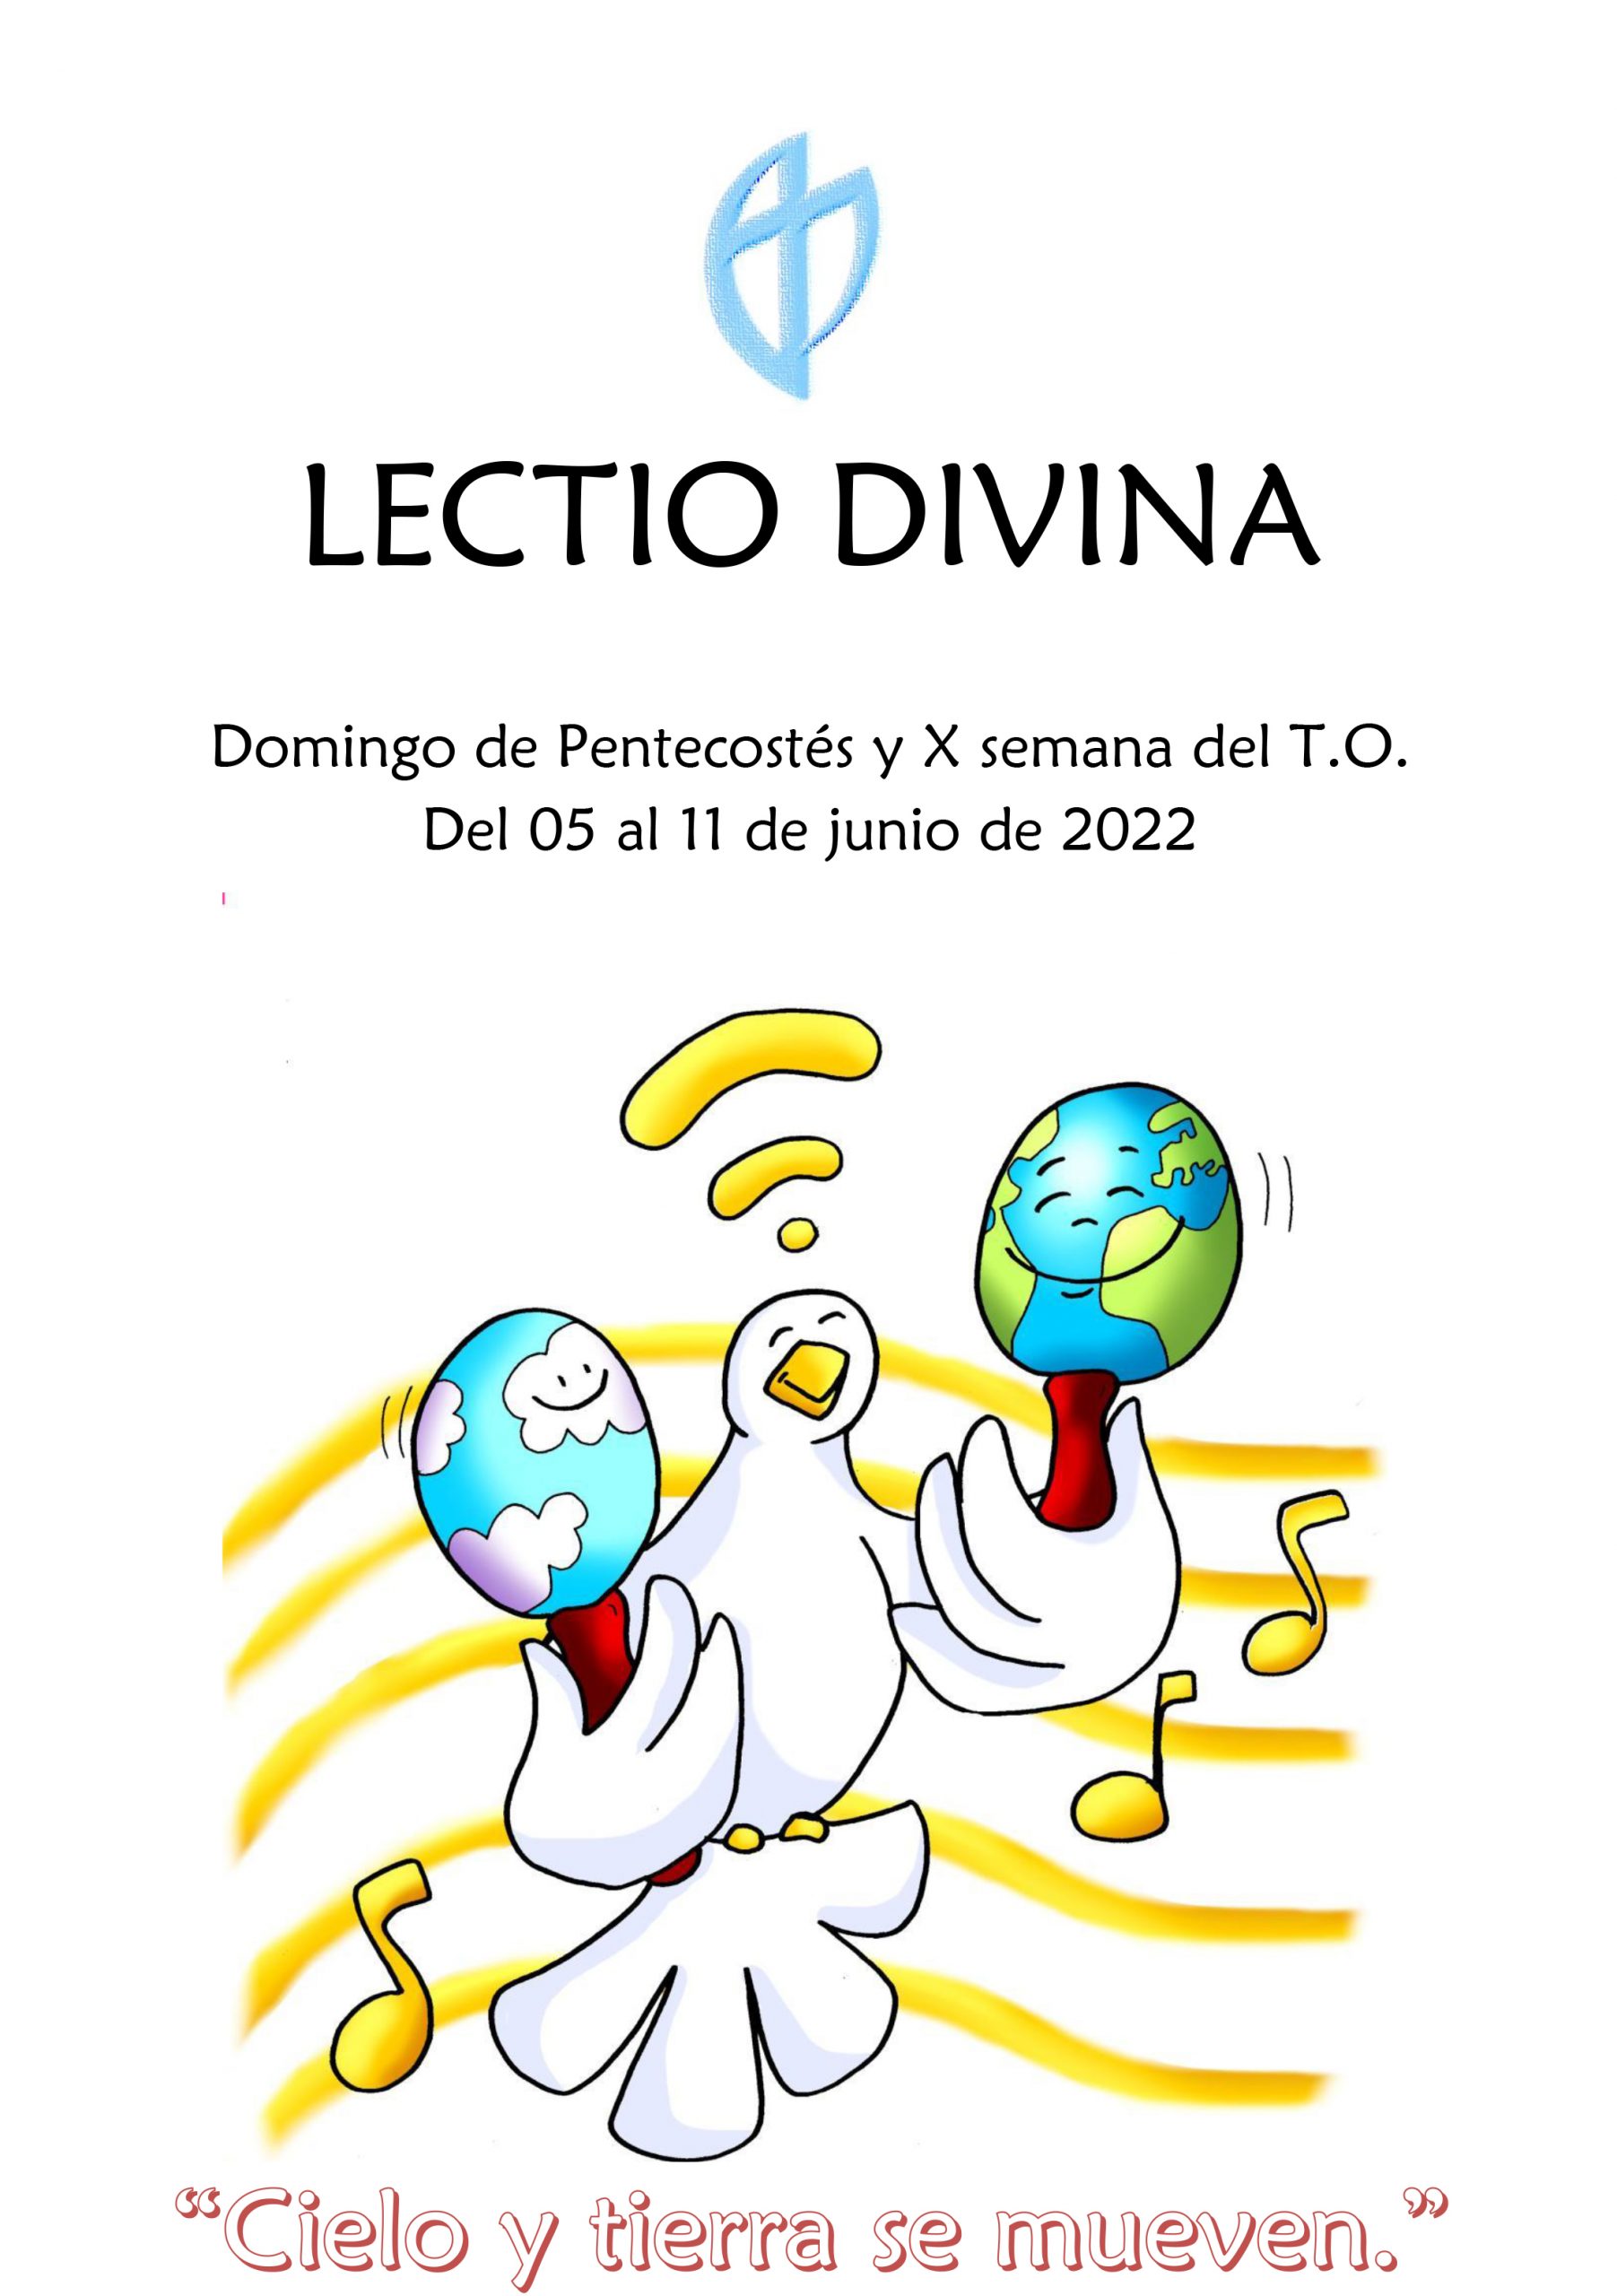 Domingo de Pentecostés y X semana del T.O. (del 05 al 11 de junio de 2022)